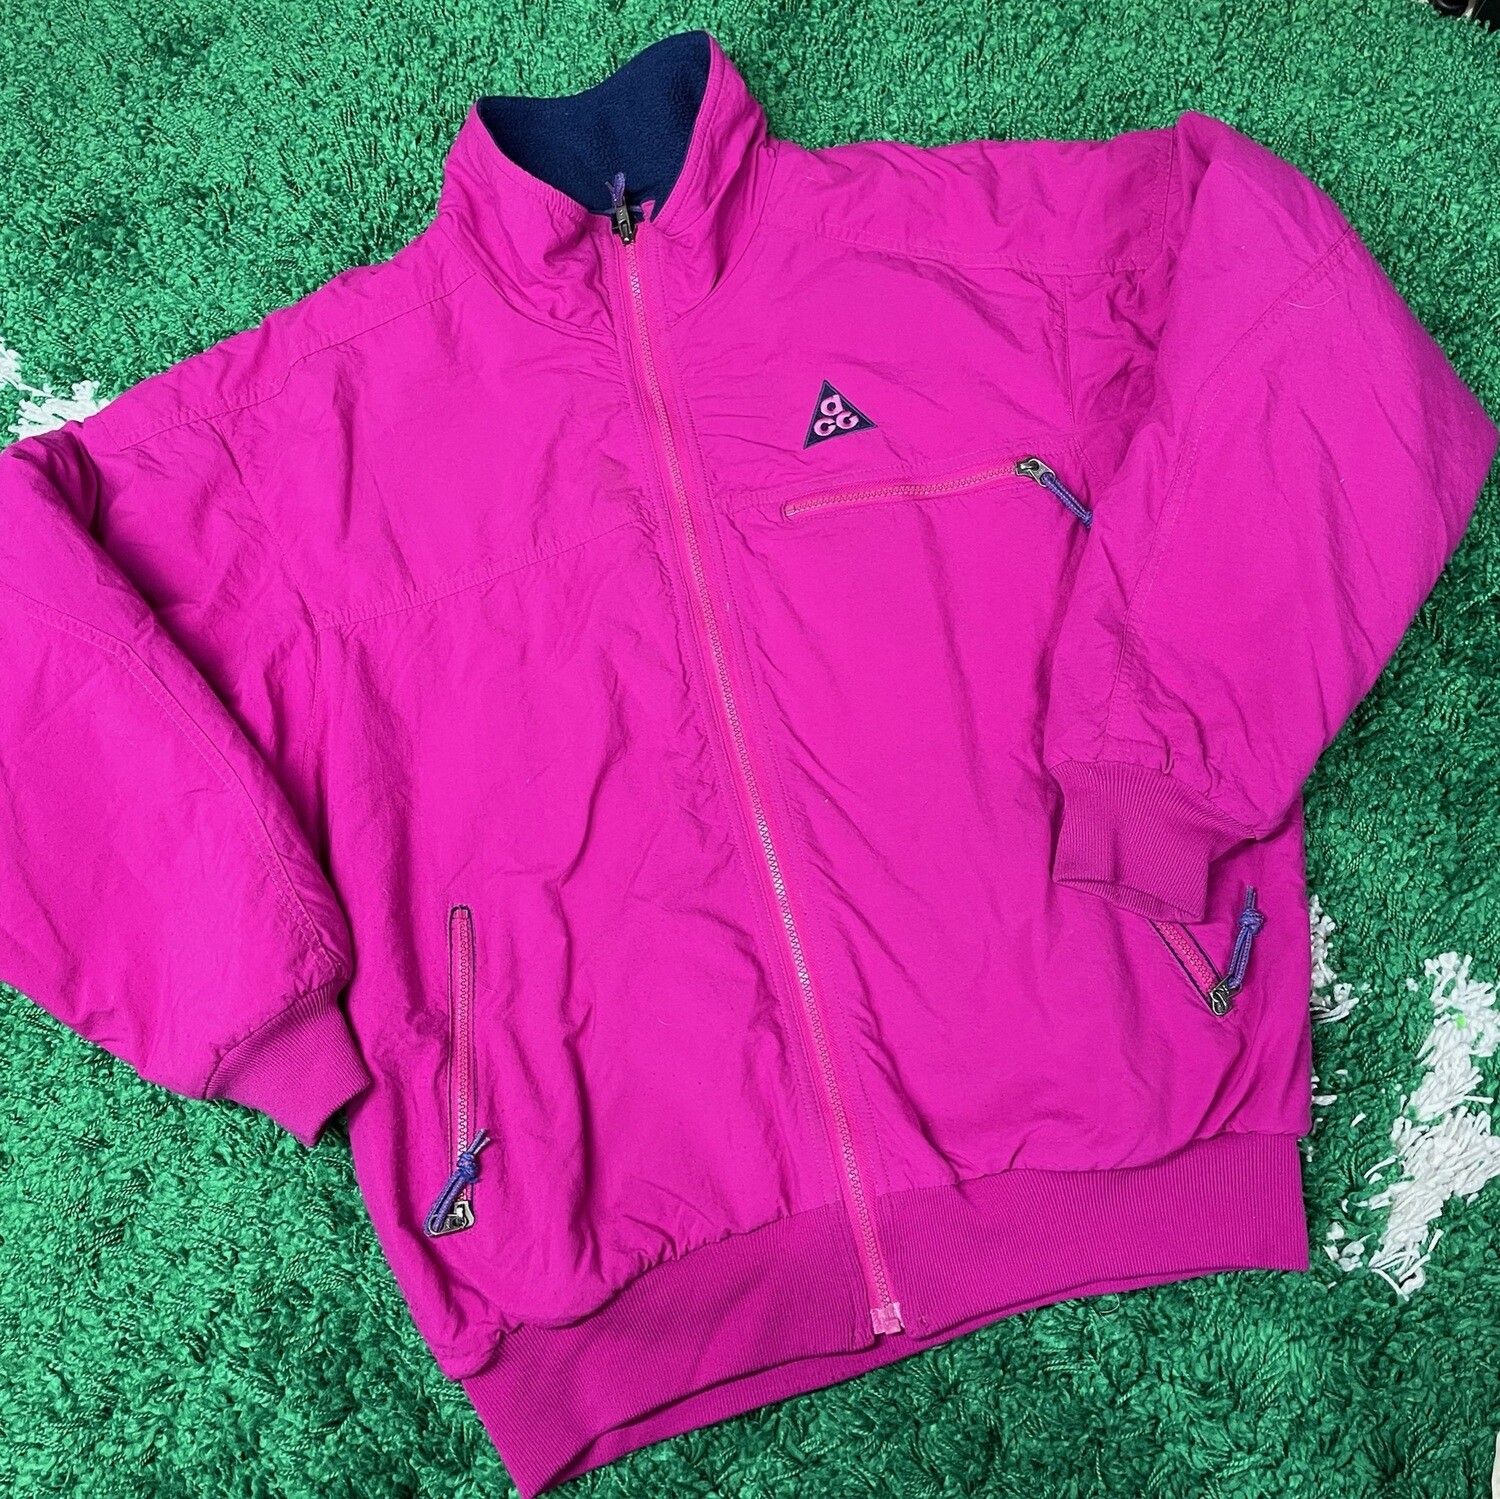 Nike ACG Pink Jacket Size Medium